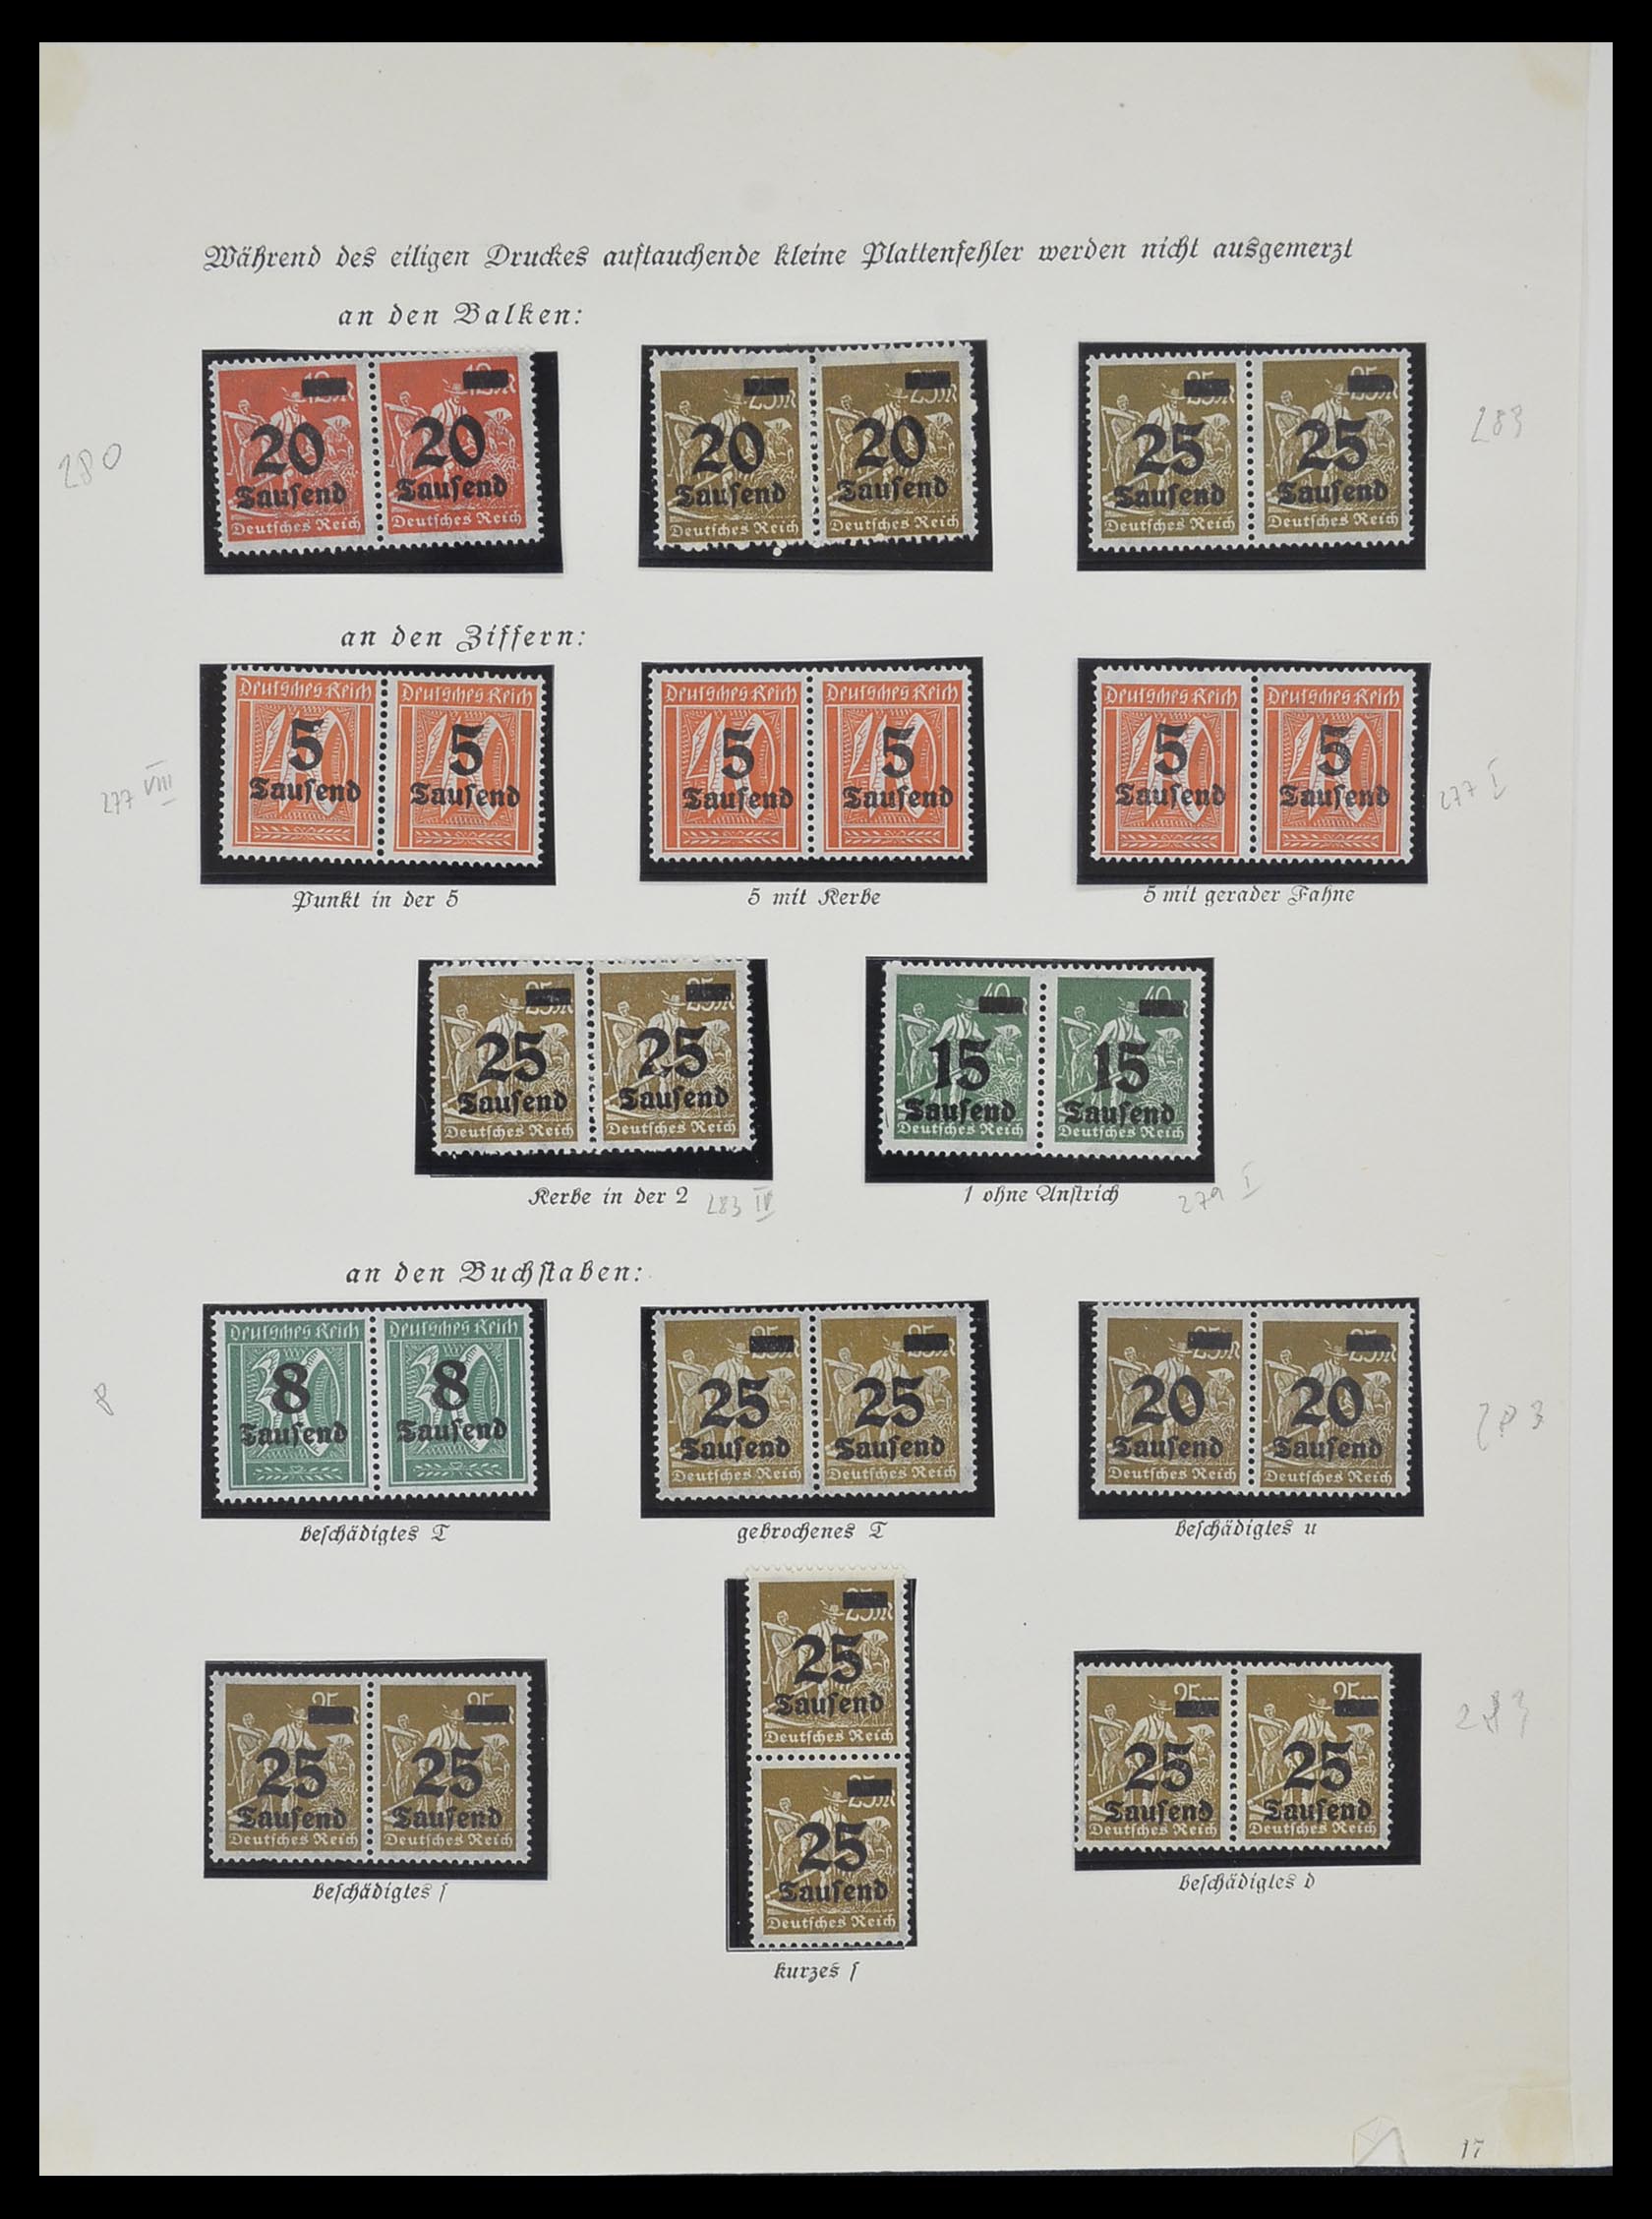 33957 007 - Postzegelverzameling 33957 Duitse Rijk infla 1923.